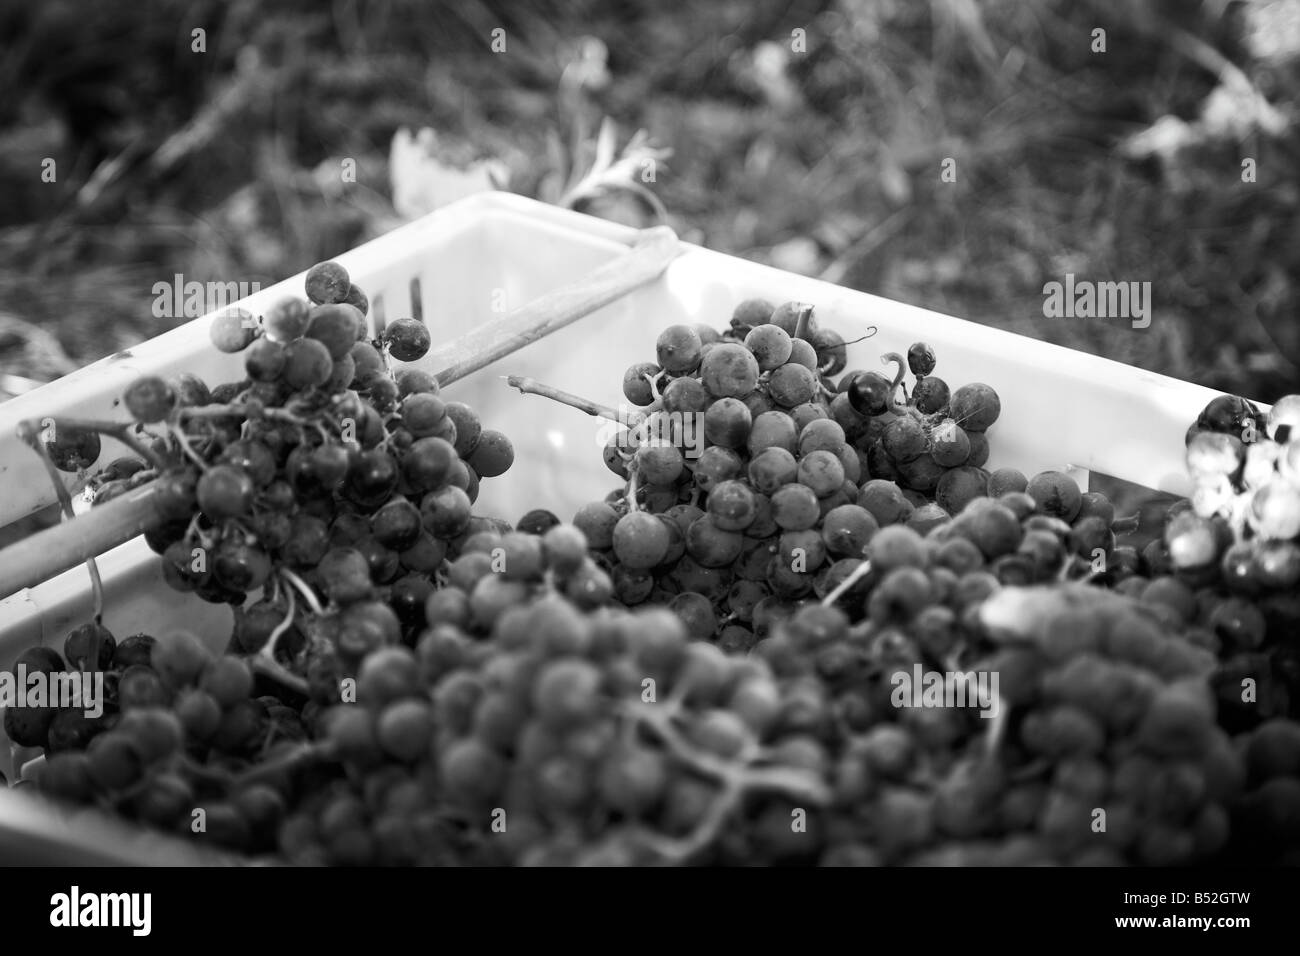 Panier de mûres cueillies à la main les raisins de merlot Banque D'Images